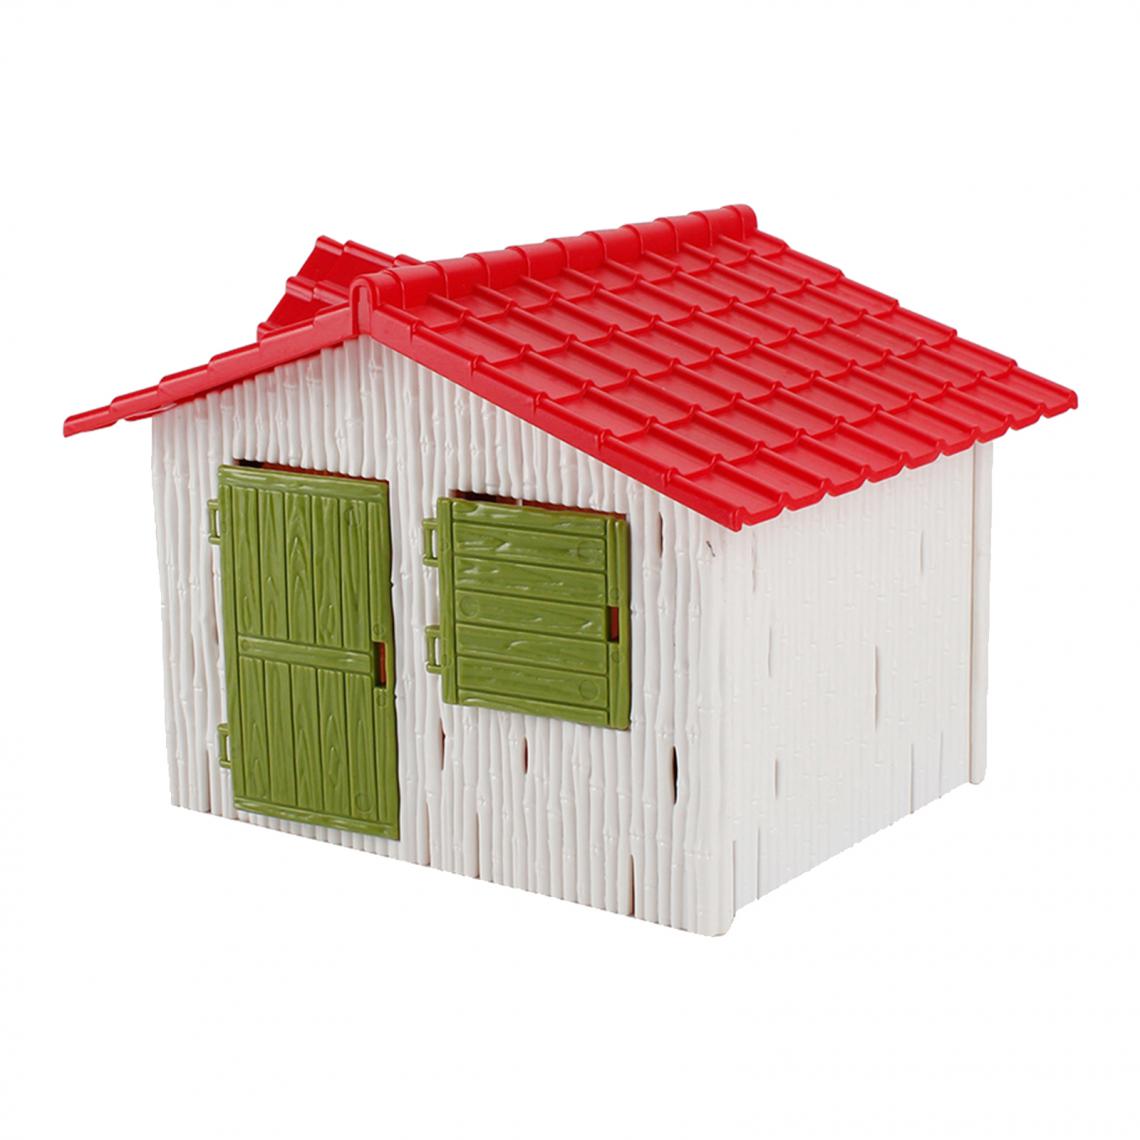 marque generique - Fairy Cottage Micro Landscape Yard Building Modèle Disposition Diorama Style D - Petite déco d'exterieur